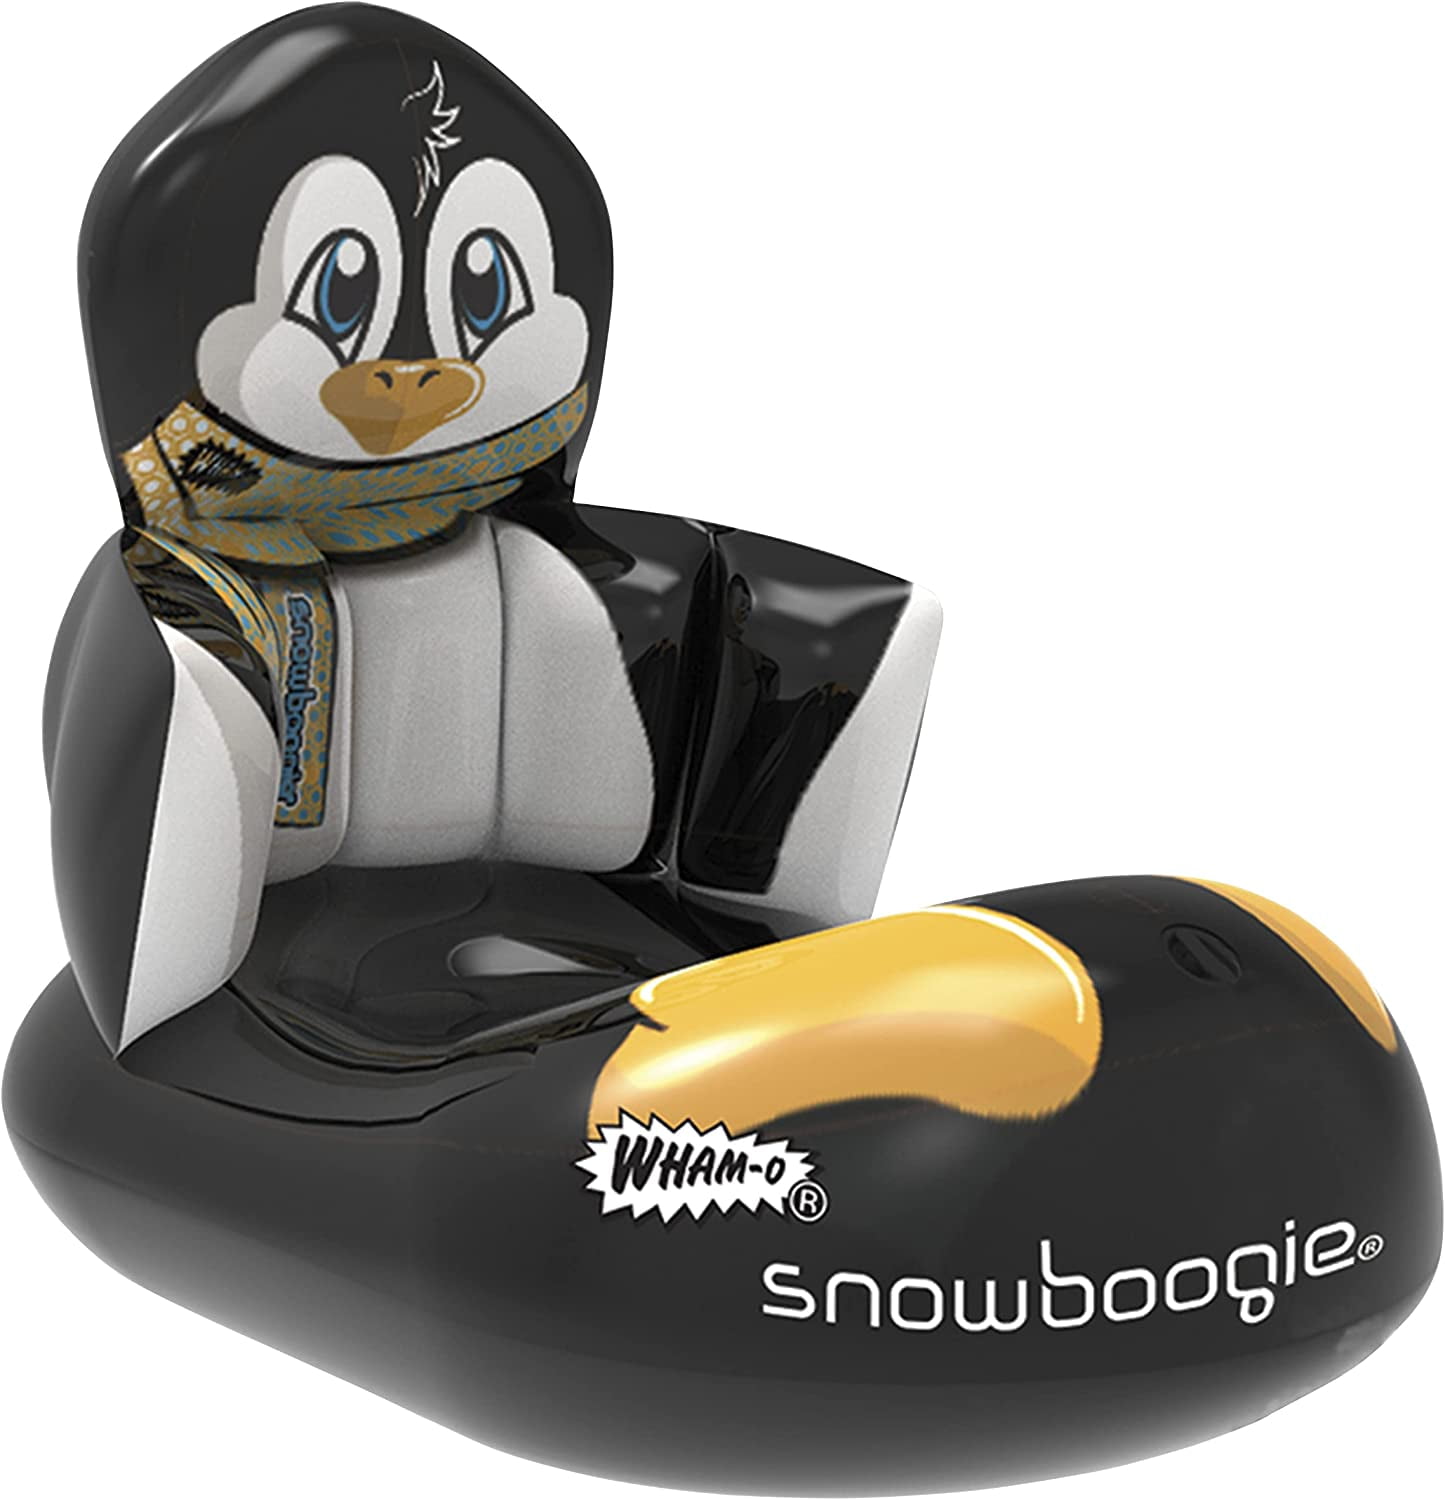 Snowboogie 36" Kids Snow Sled Fox Design 